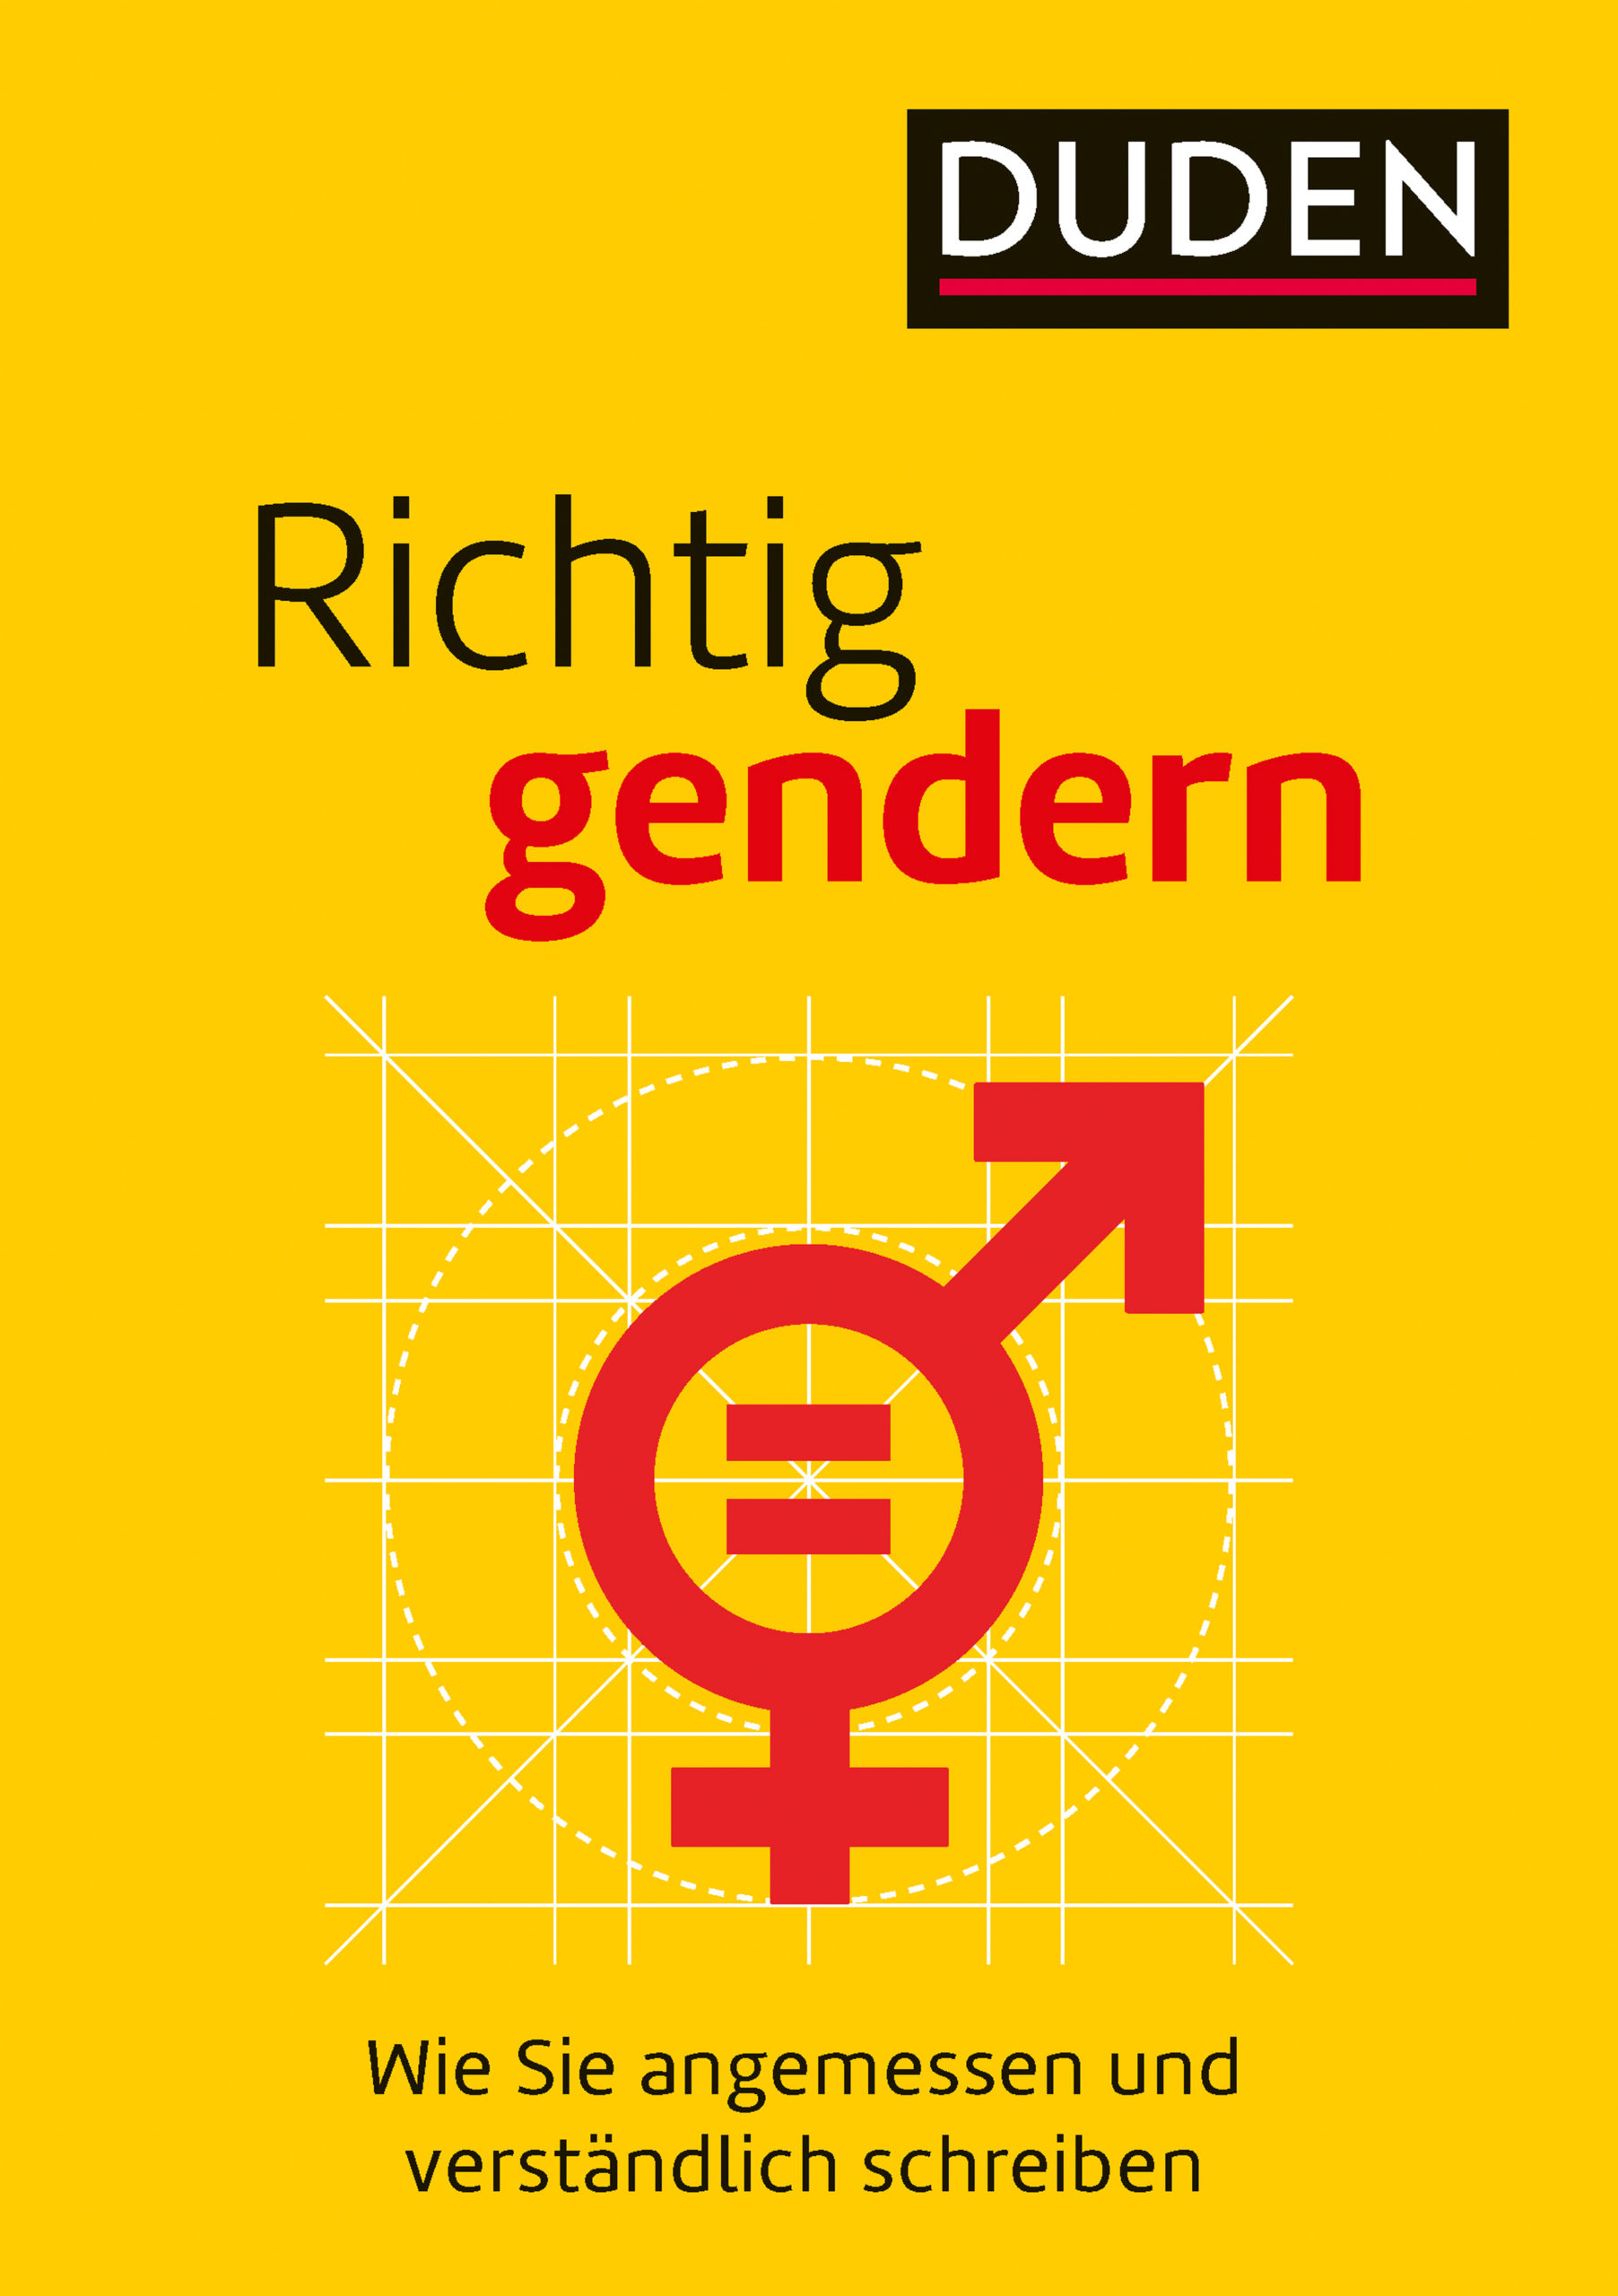 „Schluss mit dem Gender-Unfug!“ – Zwei Petitionen gegen die Gender-Sprache